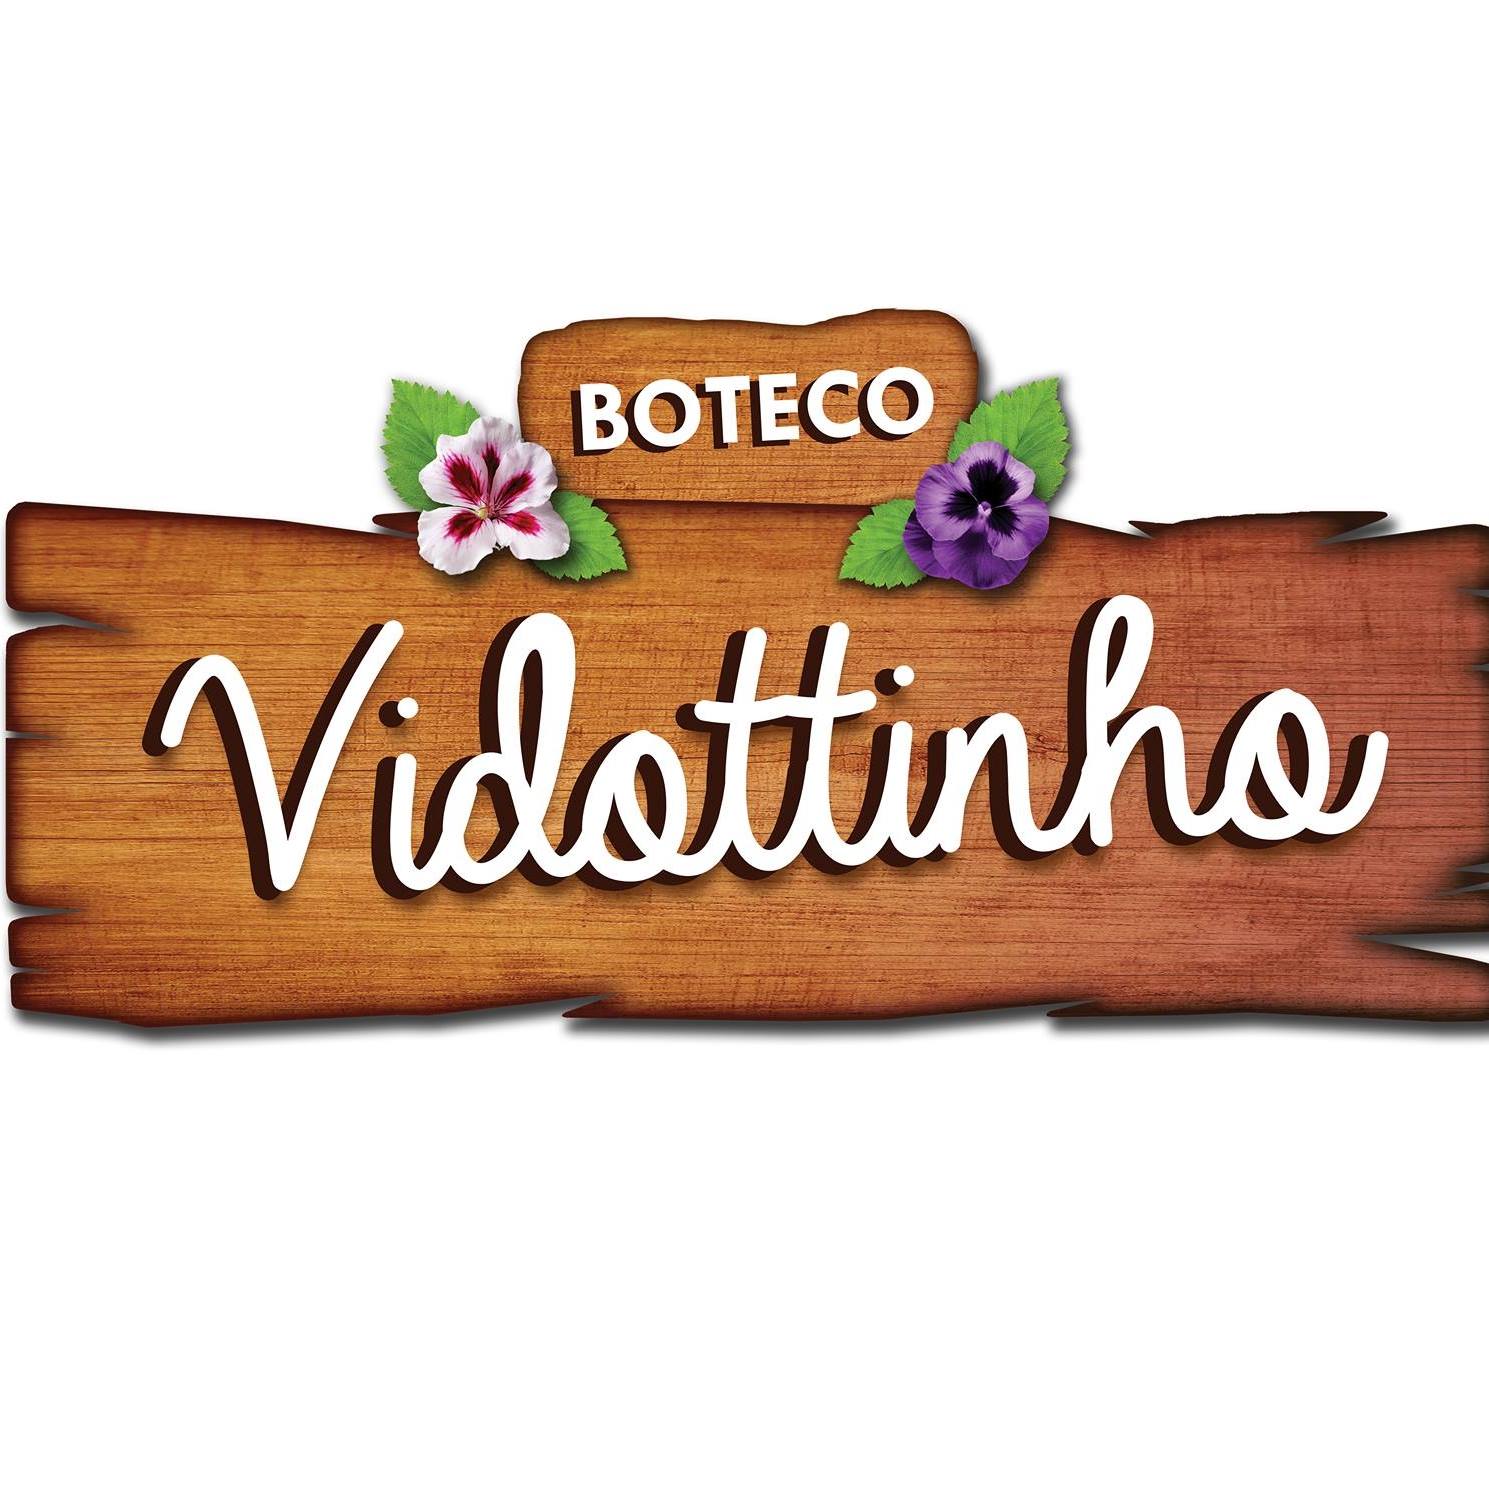 Boteco Vidottinho - Pq. das Bandeiras